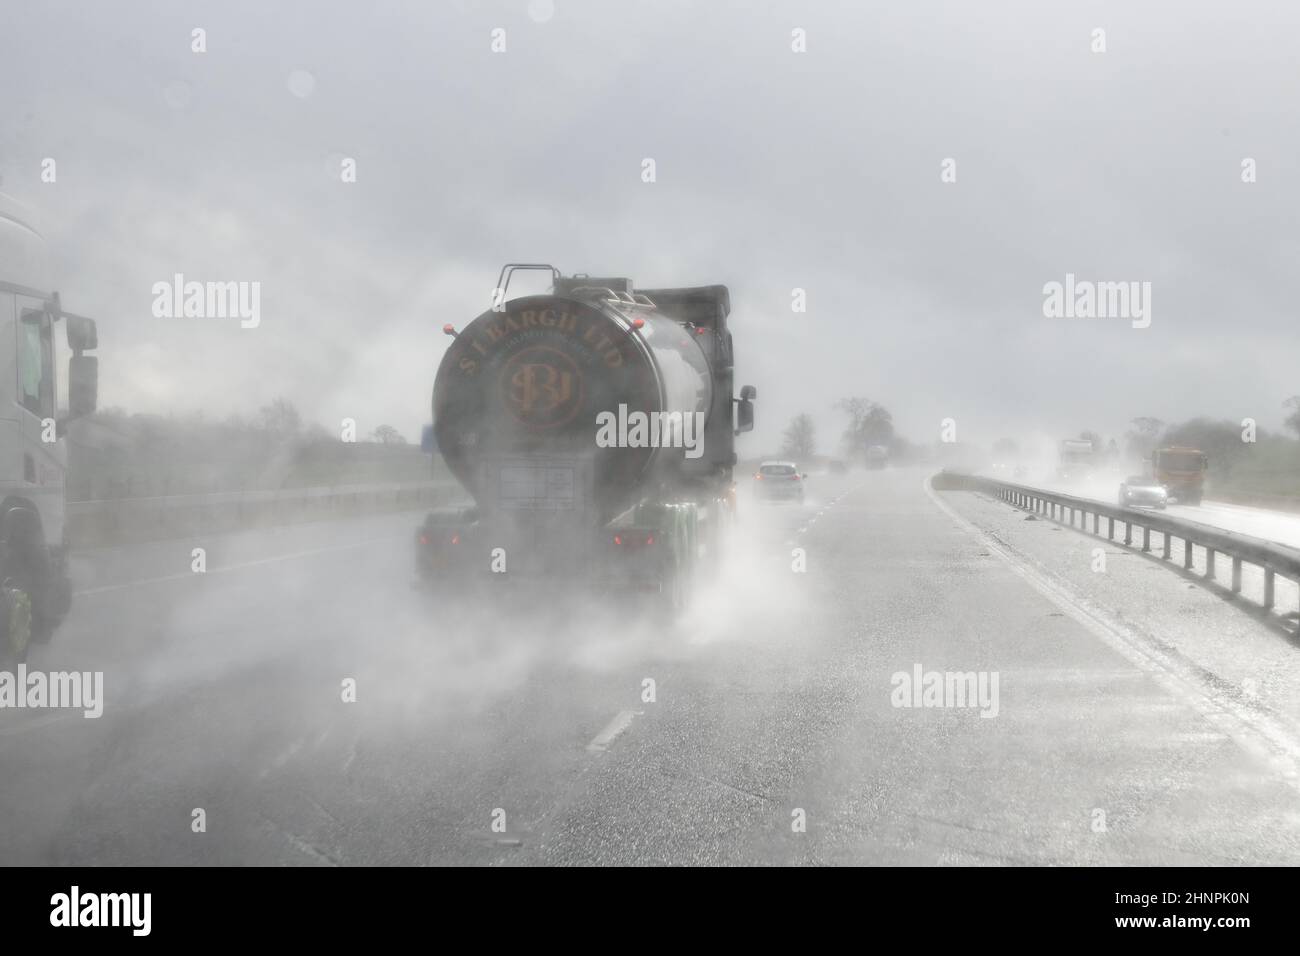 Guida in autostrada con scarsa visibilità con pioggia e spruzzi stradali provenienti dai veicoli che precedono la guida al sole - Regno Unito Foto Stock